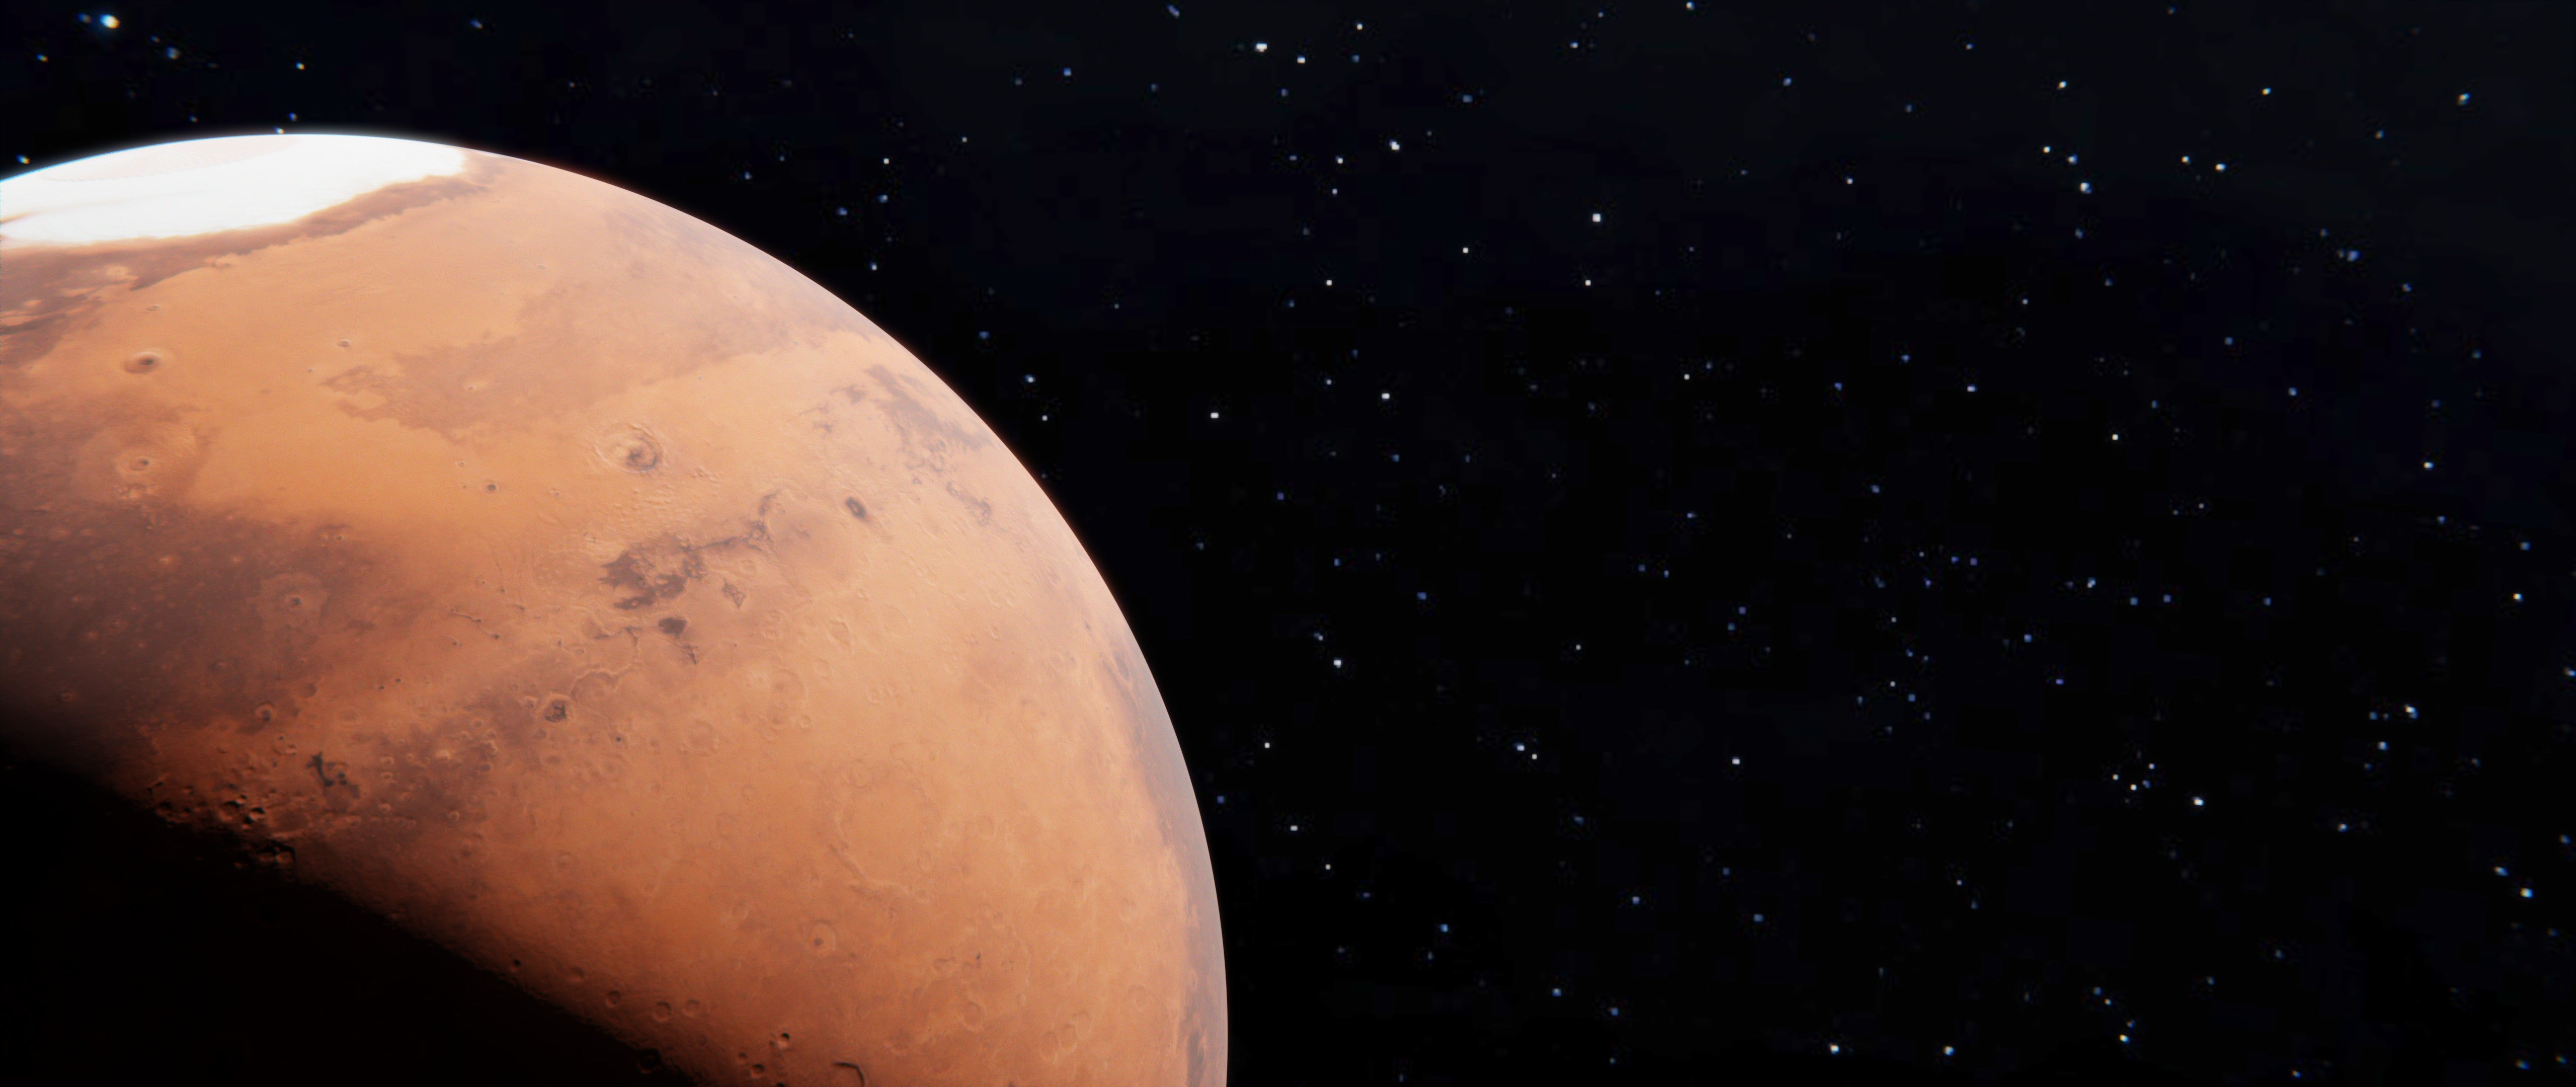 Ultra Hd Mars 4k , HD Wallpaper & Backgrounds